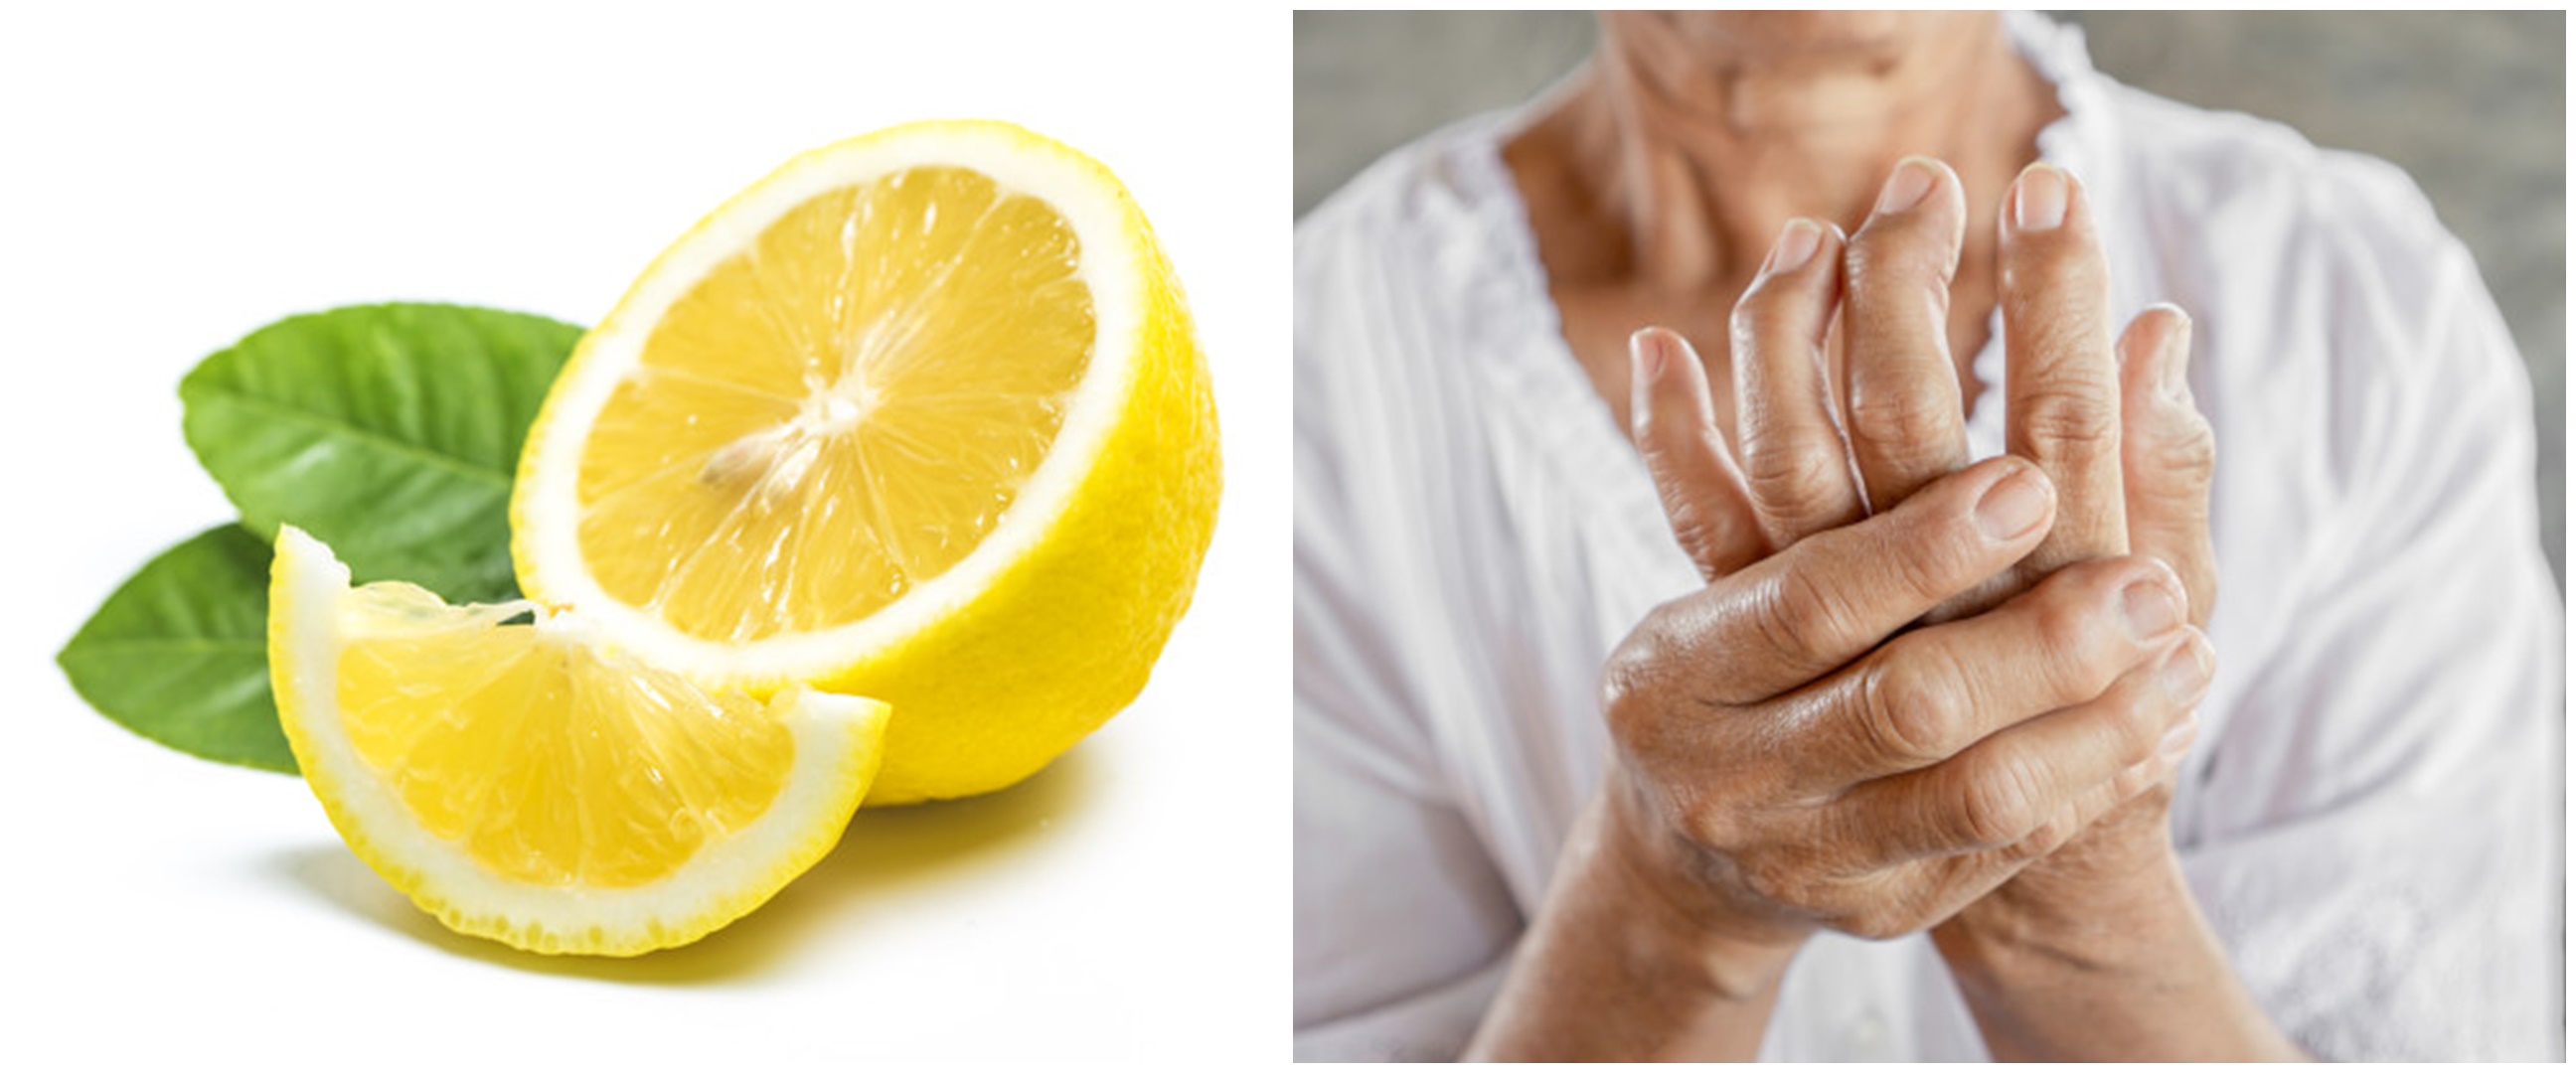 Manfaat lemon untuk asam urat dan cara menggunakannya